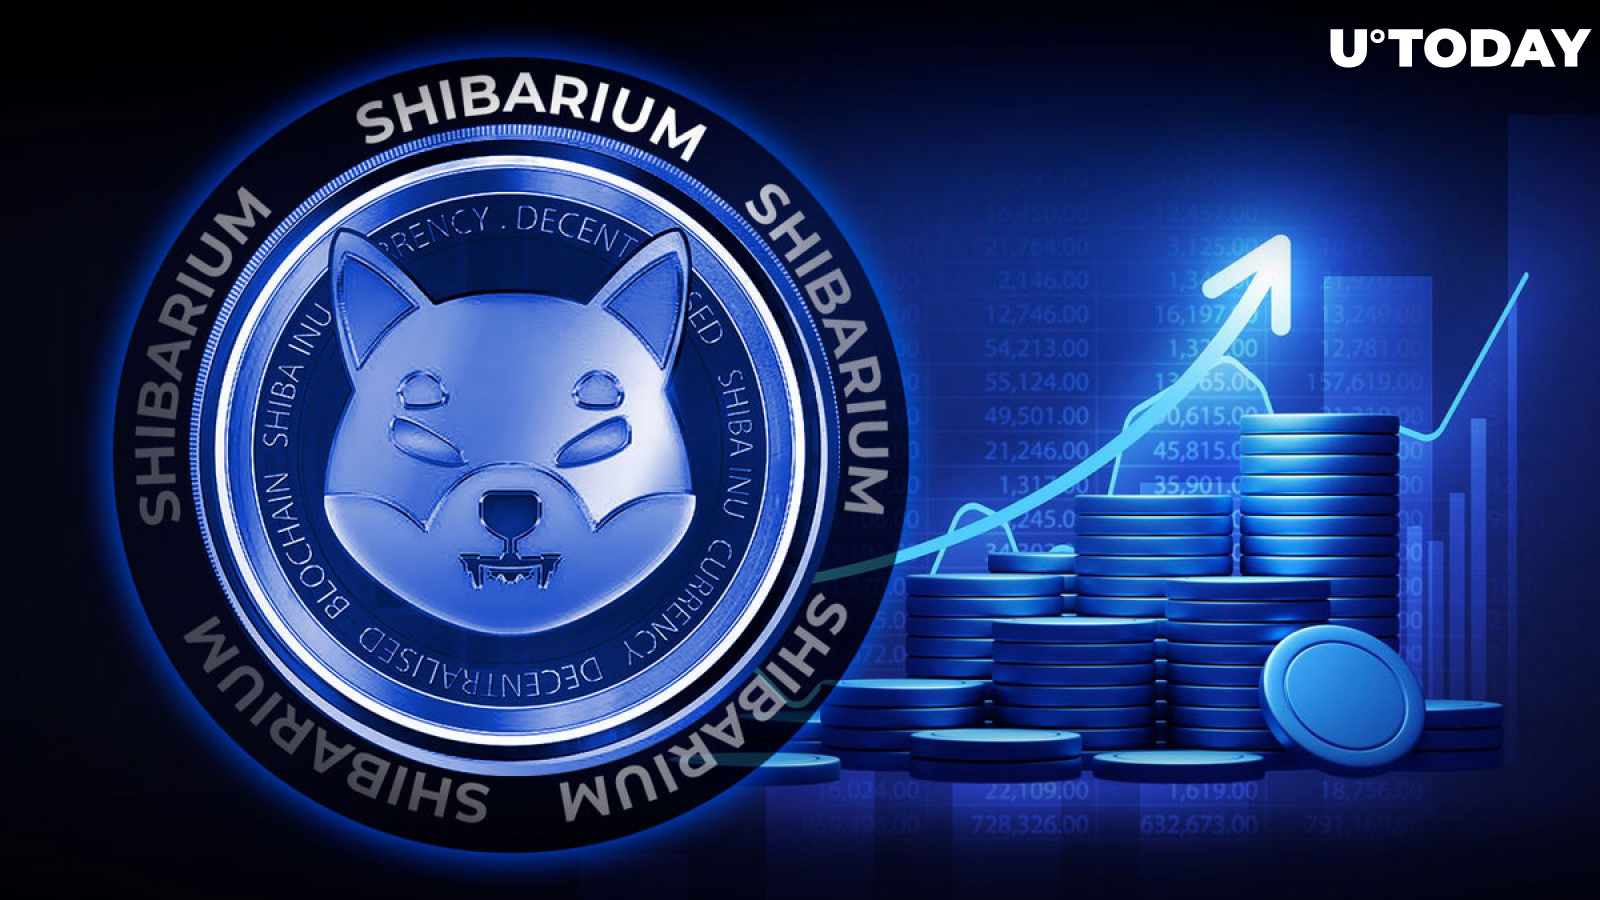 Shibarium ၏ အရောင်းအ၀ယ်များသည် ပံ့ပိုးကူညီမှုတွင် အဓိက လဲလှယ်မှု အရိပ်အမြွက်များအဖြစ် မြင့်တက်လာသည်။